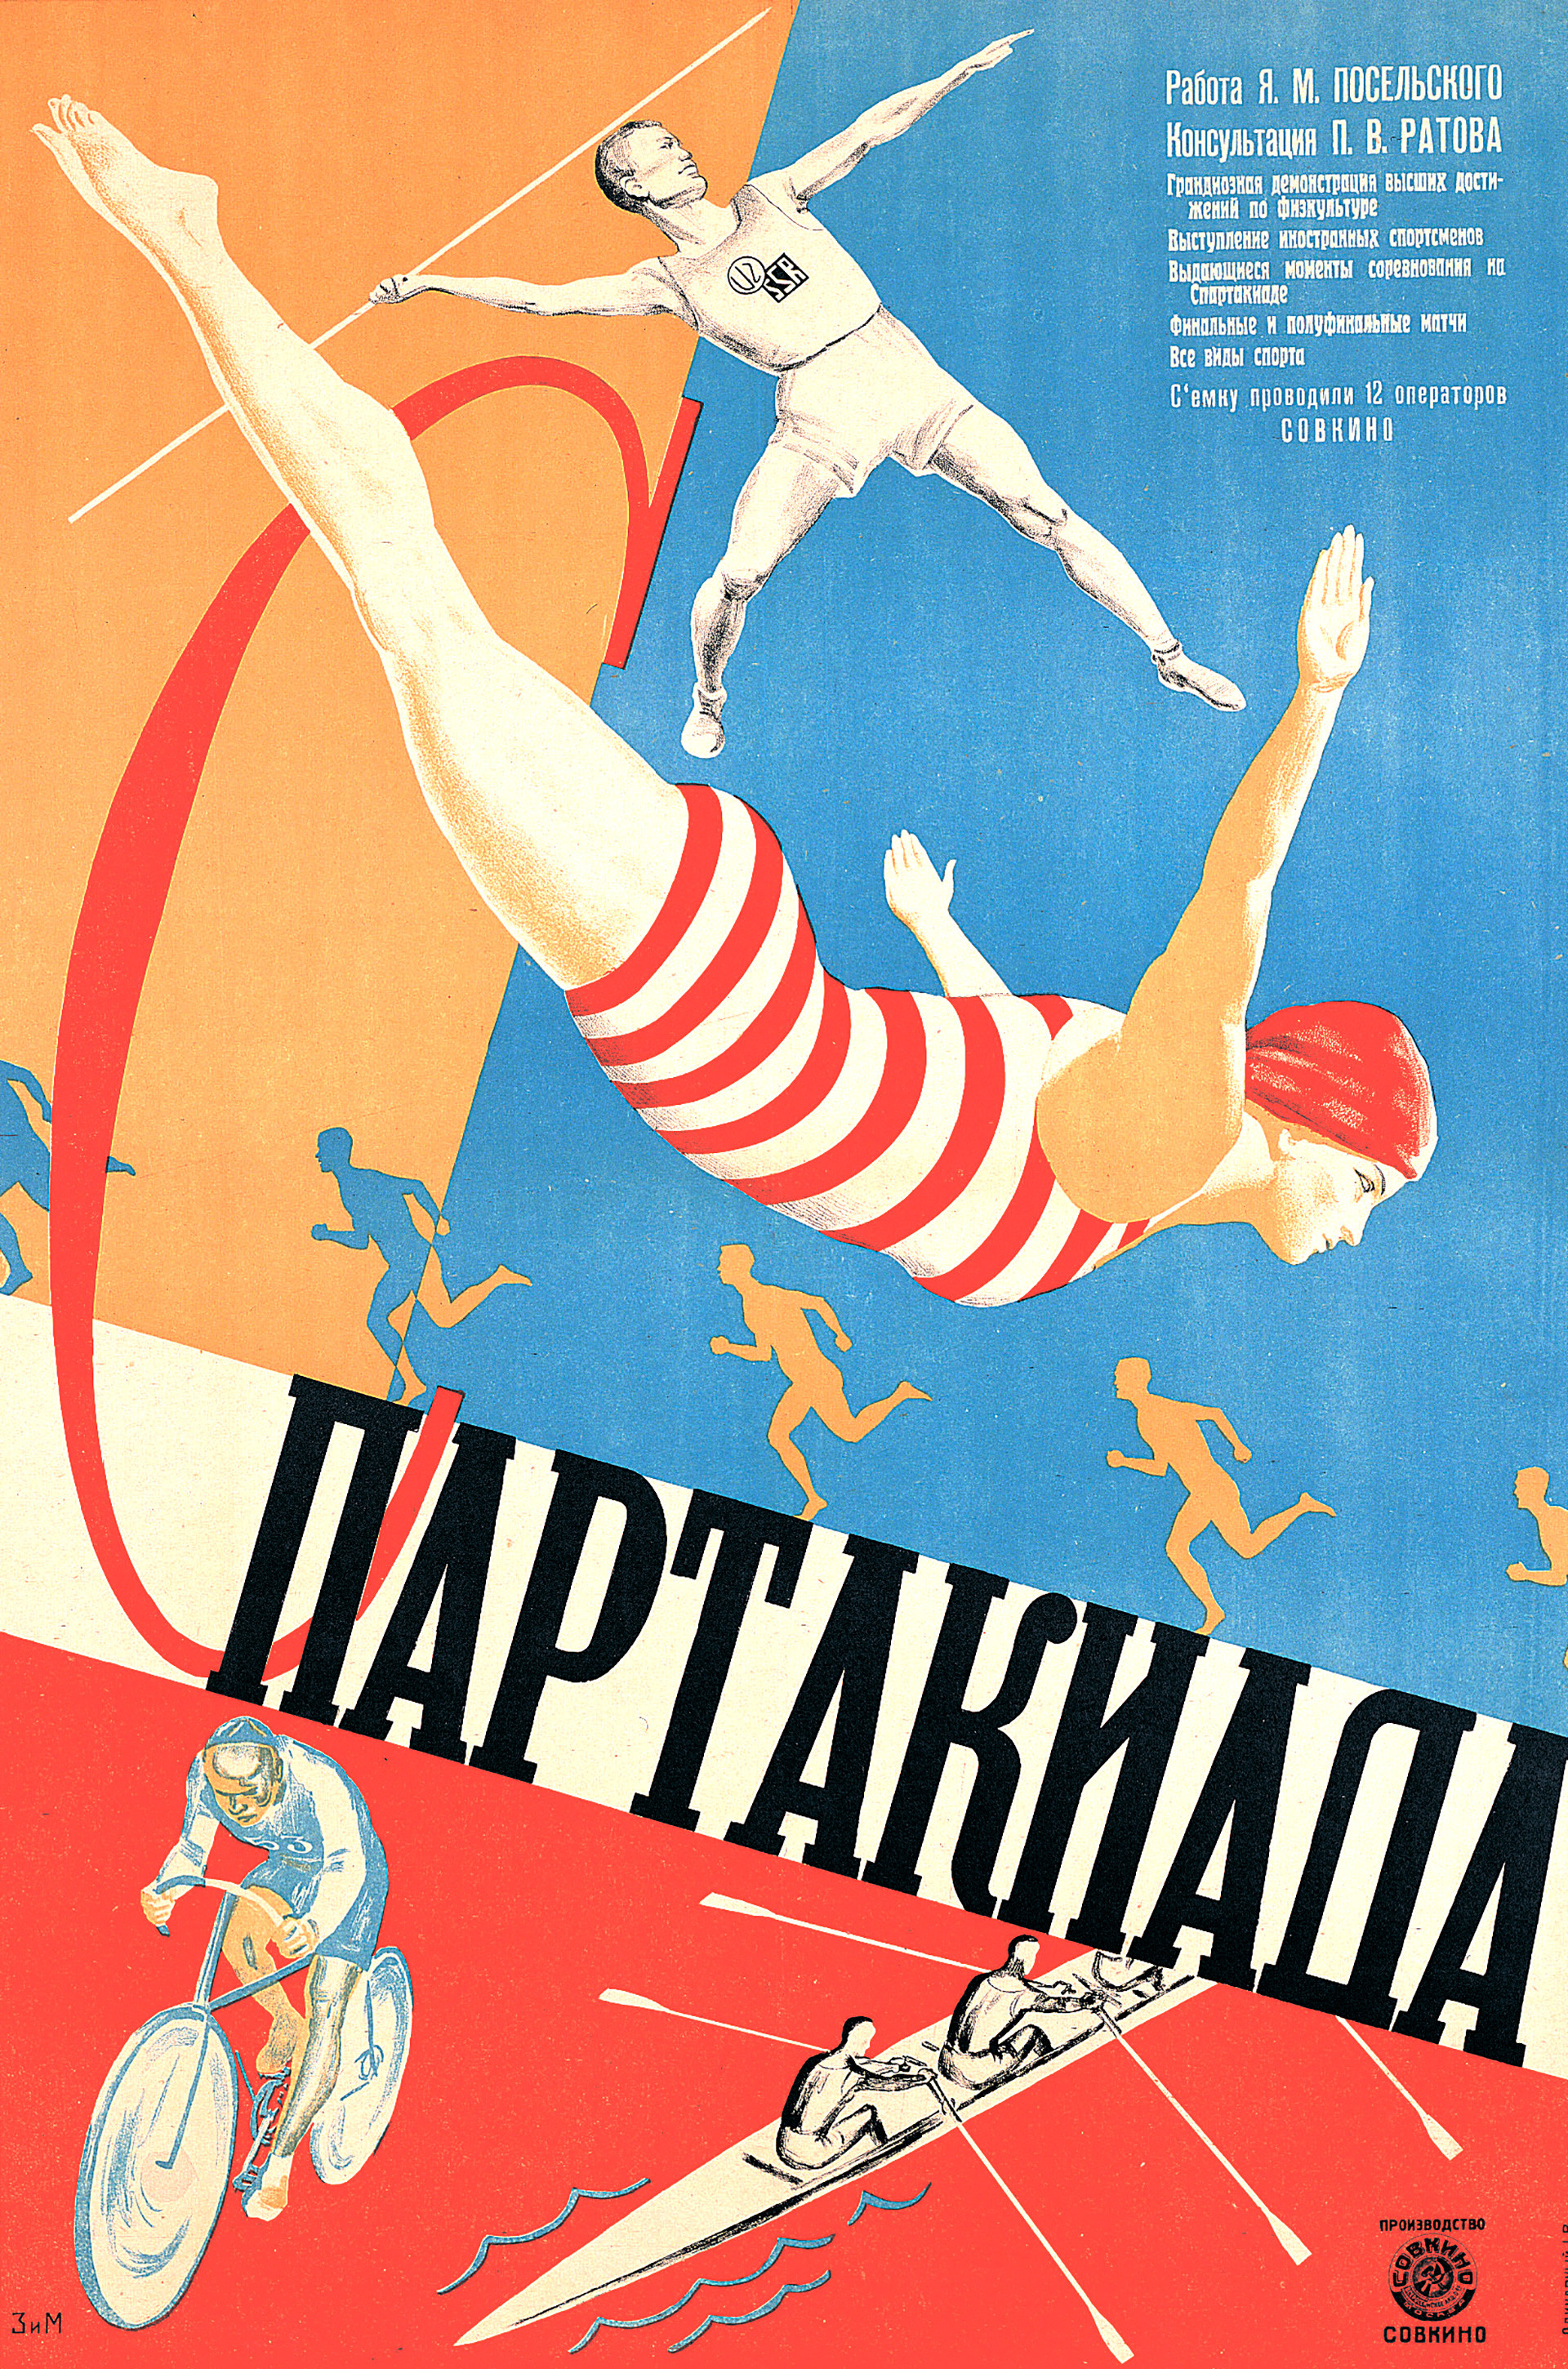 ZIM、映画『スパルタキアーダ』（1927）のポスター